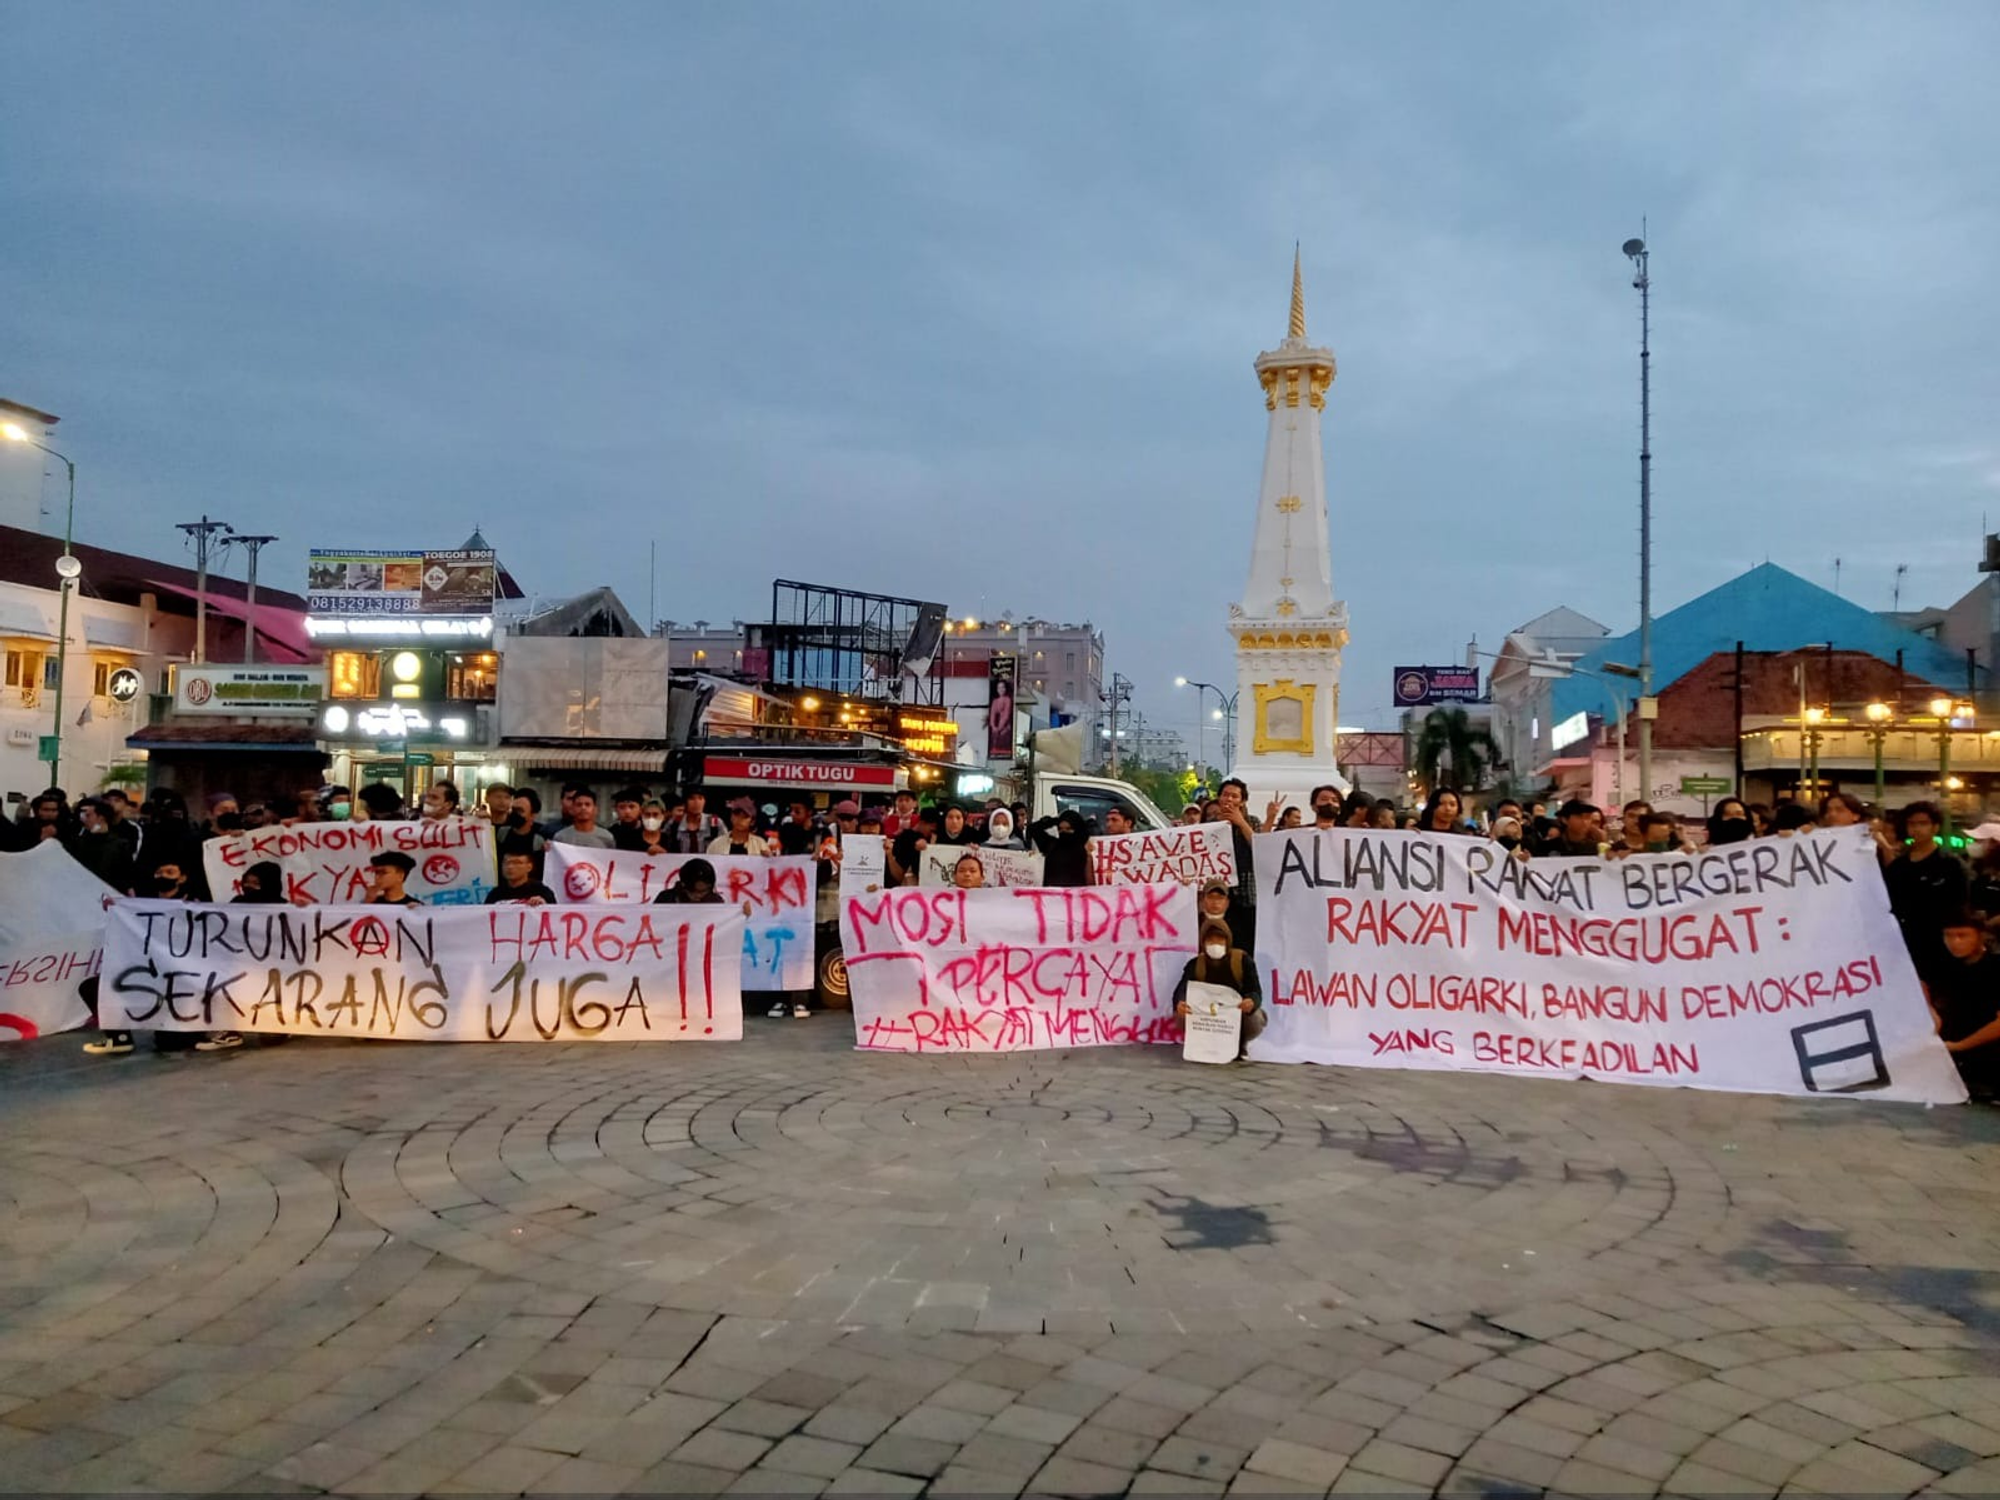 Sumber gambar: Aliansi Rakyat Bergerak,Yogyakarta